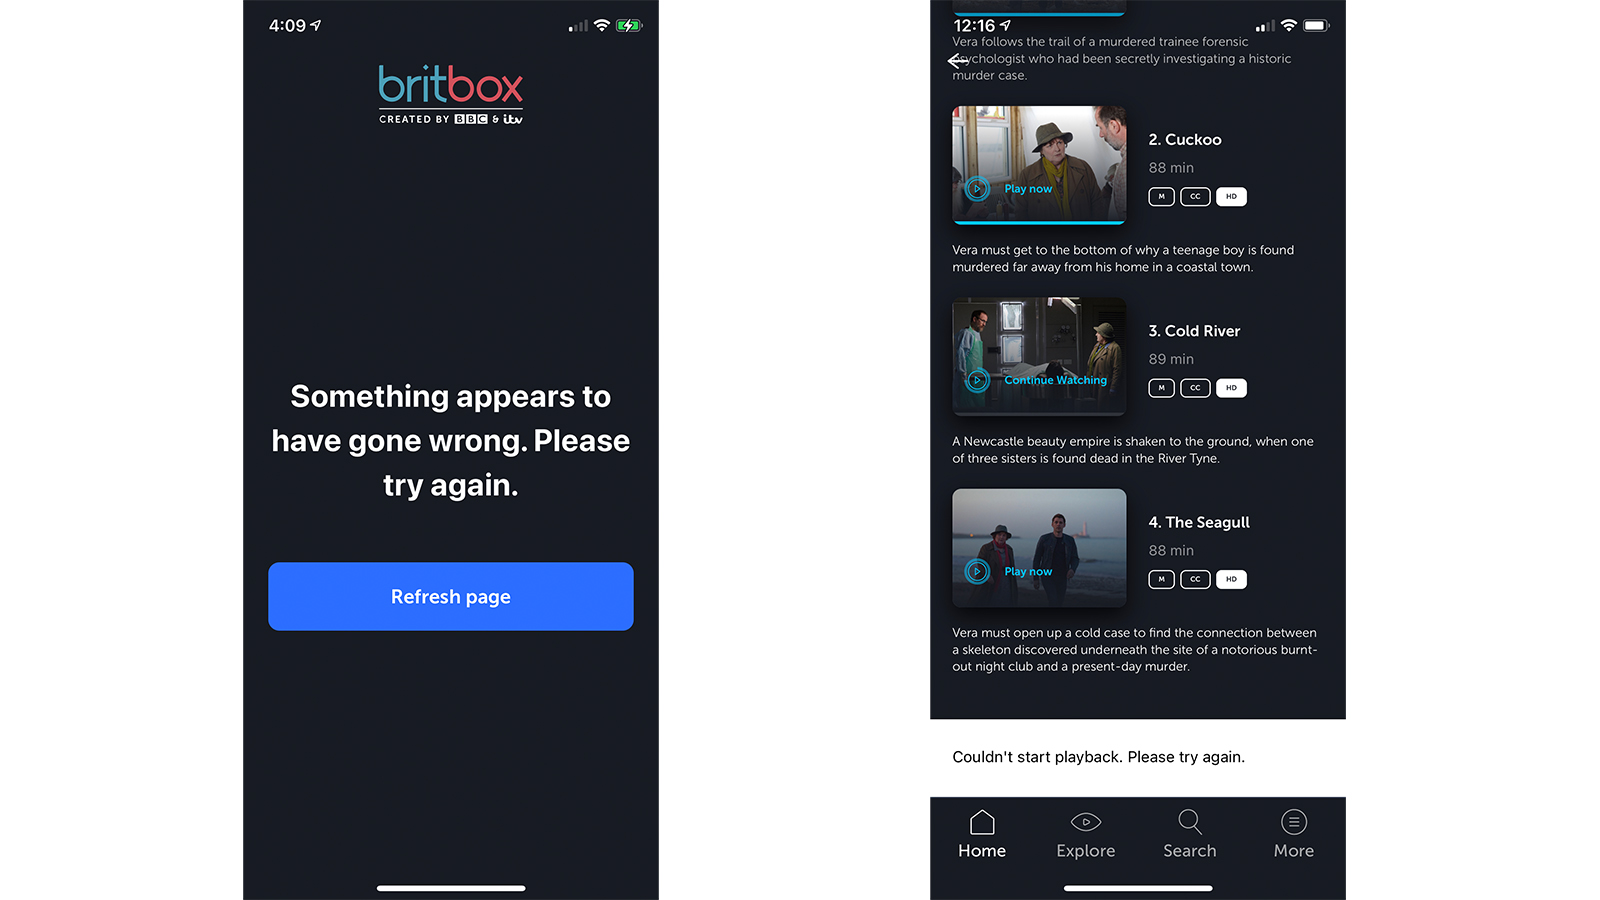 Britbox iOS app